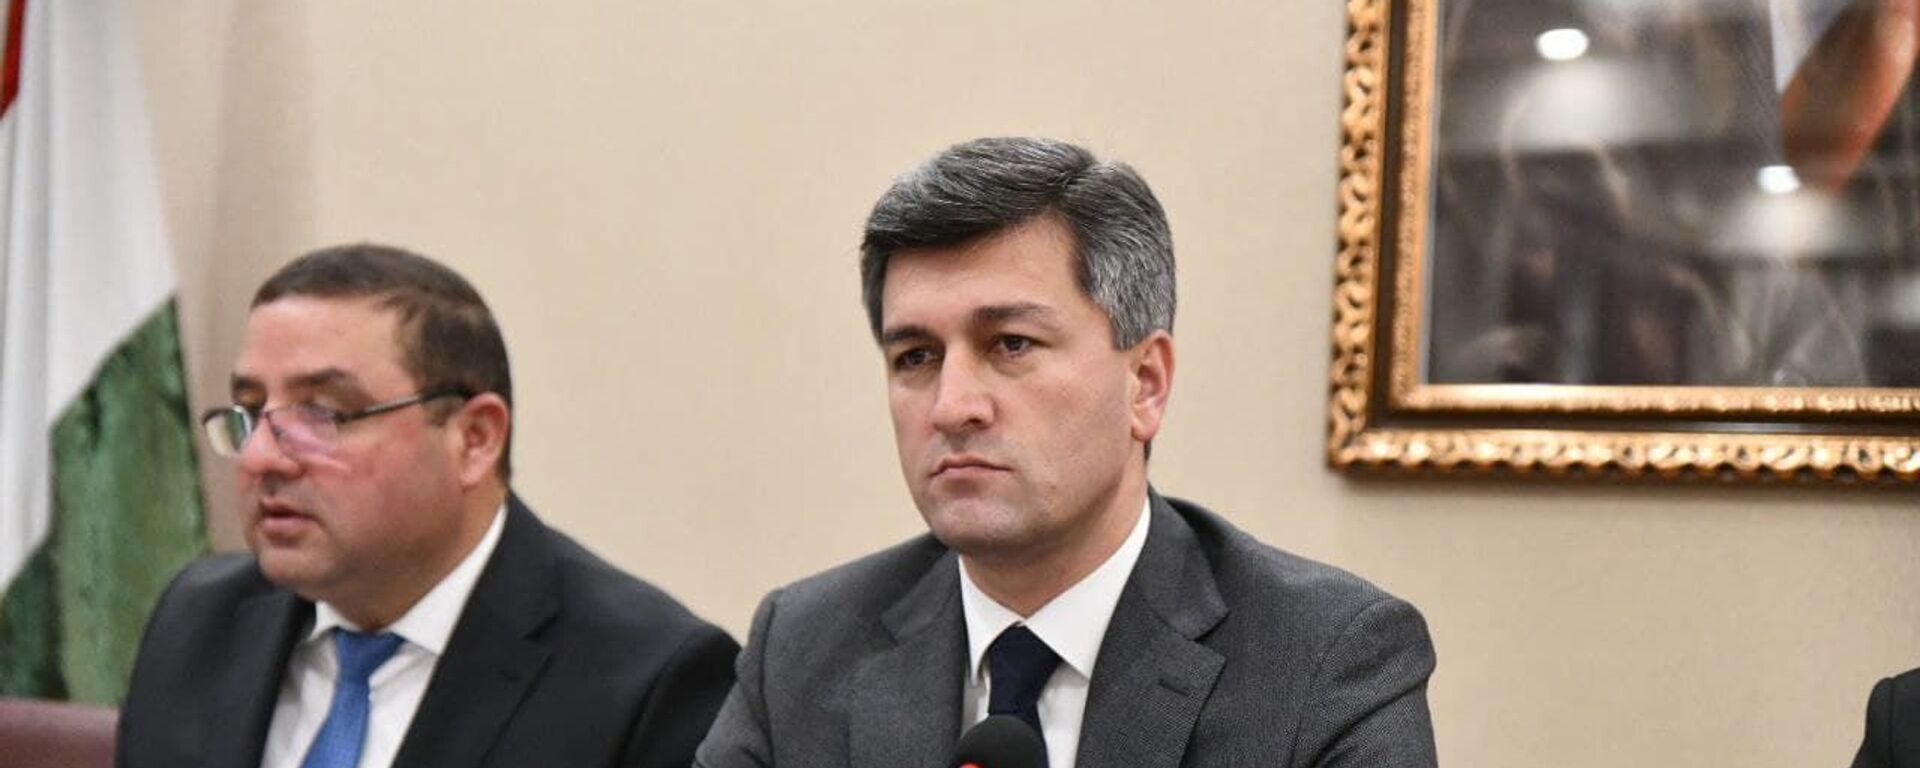 Директор Агентства гражданской авиации Таджикистана Икром Субхонзода - Sputnik Таджикистан, 1920, 18.04.2021